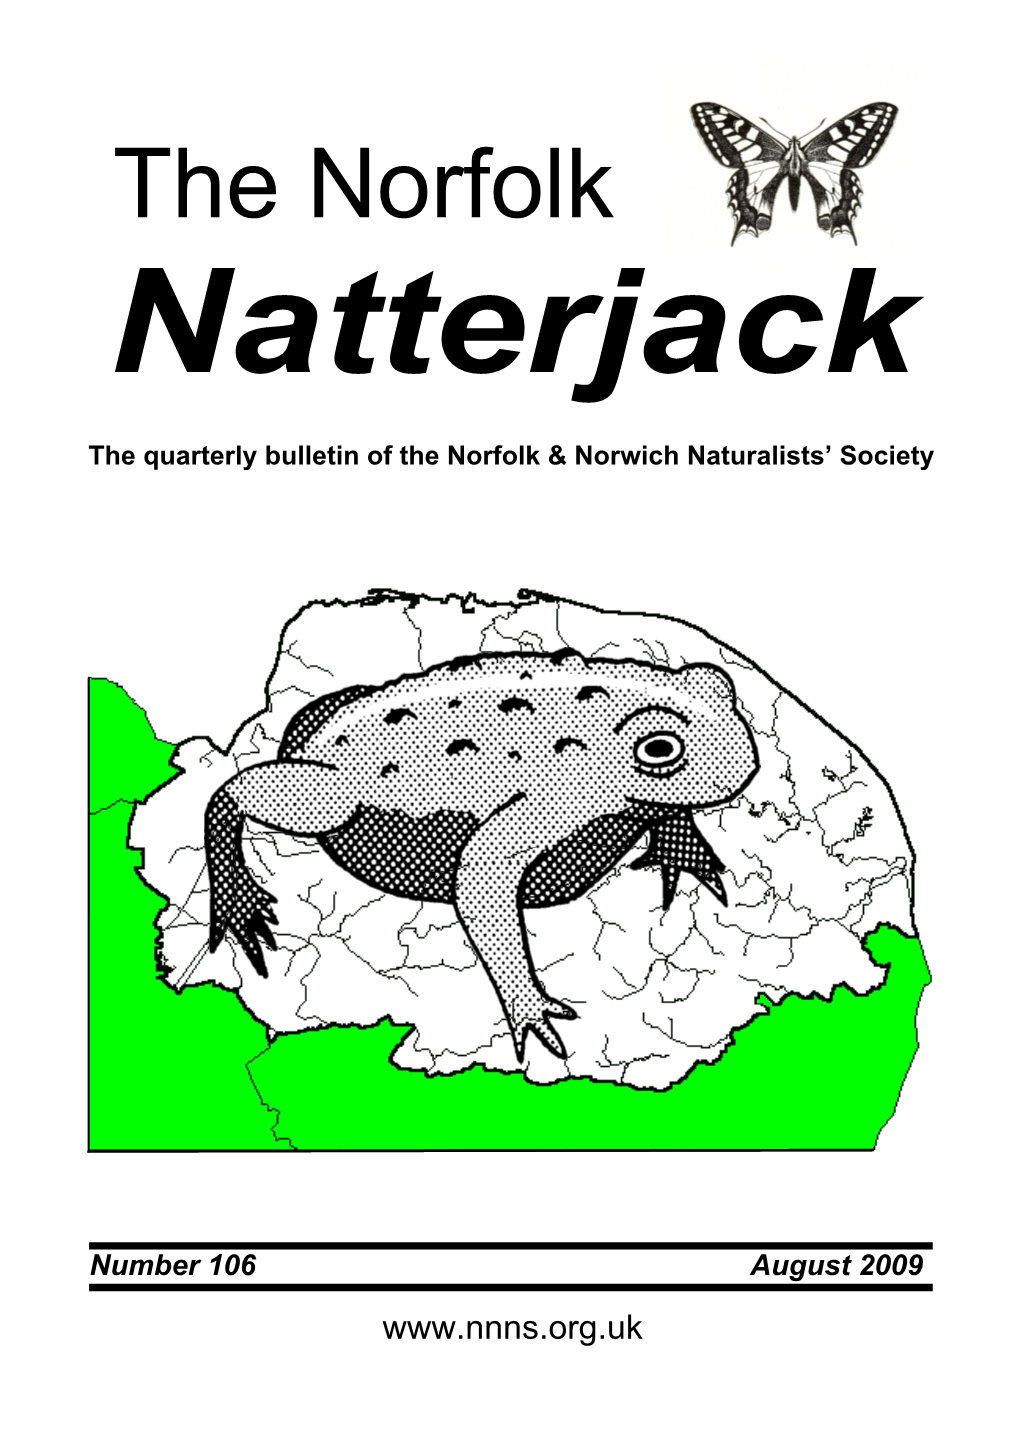 The Norfolk Natterjack